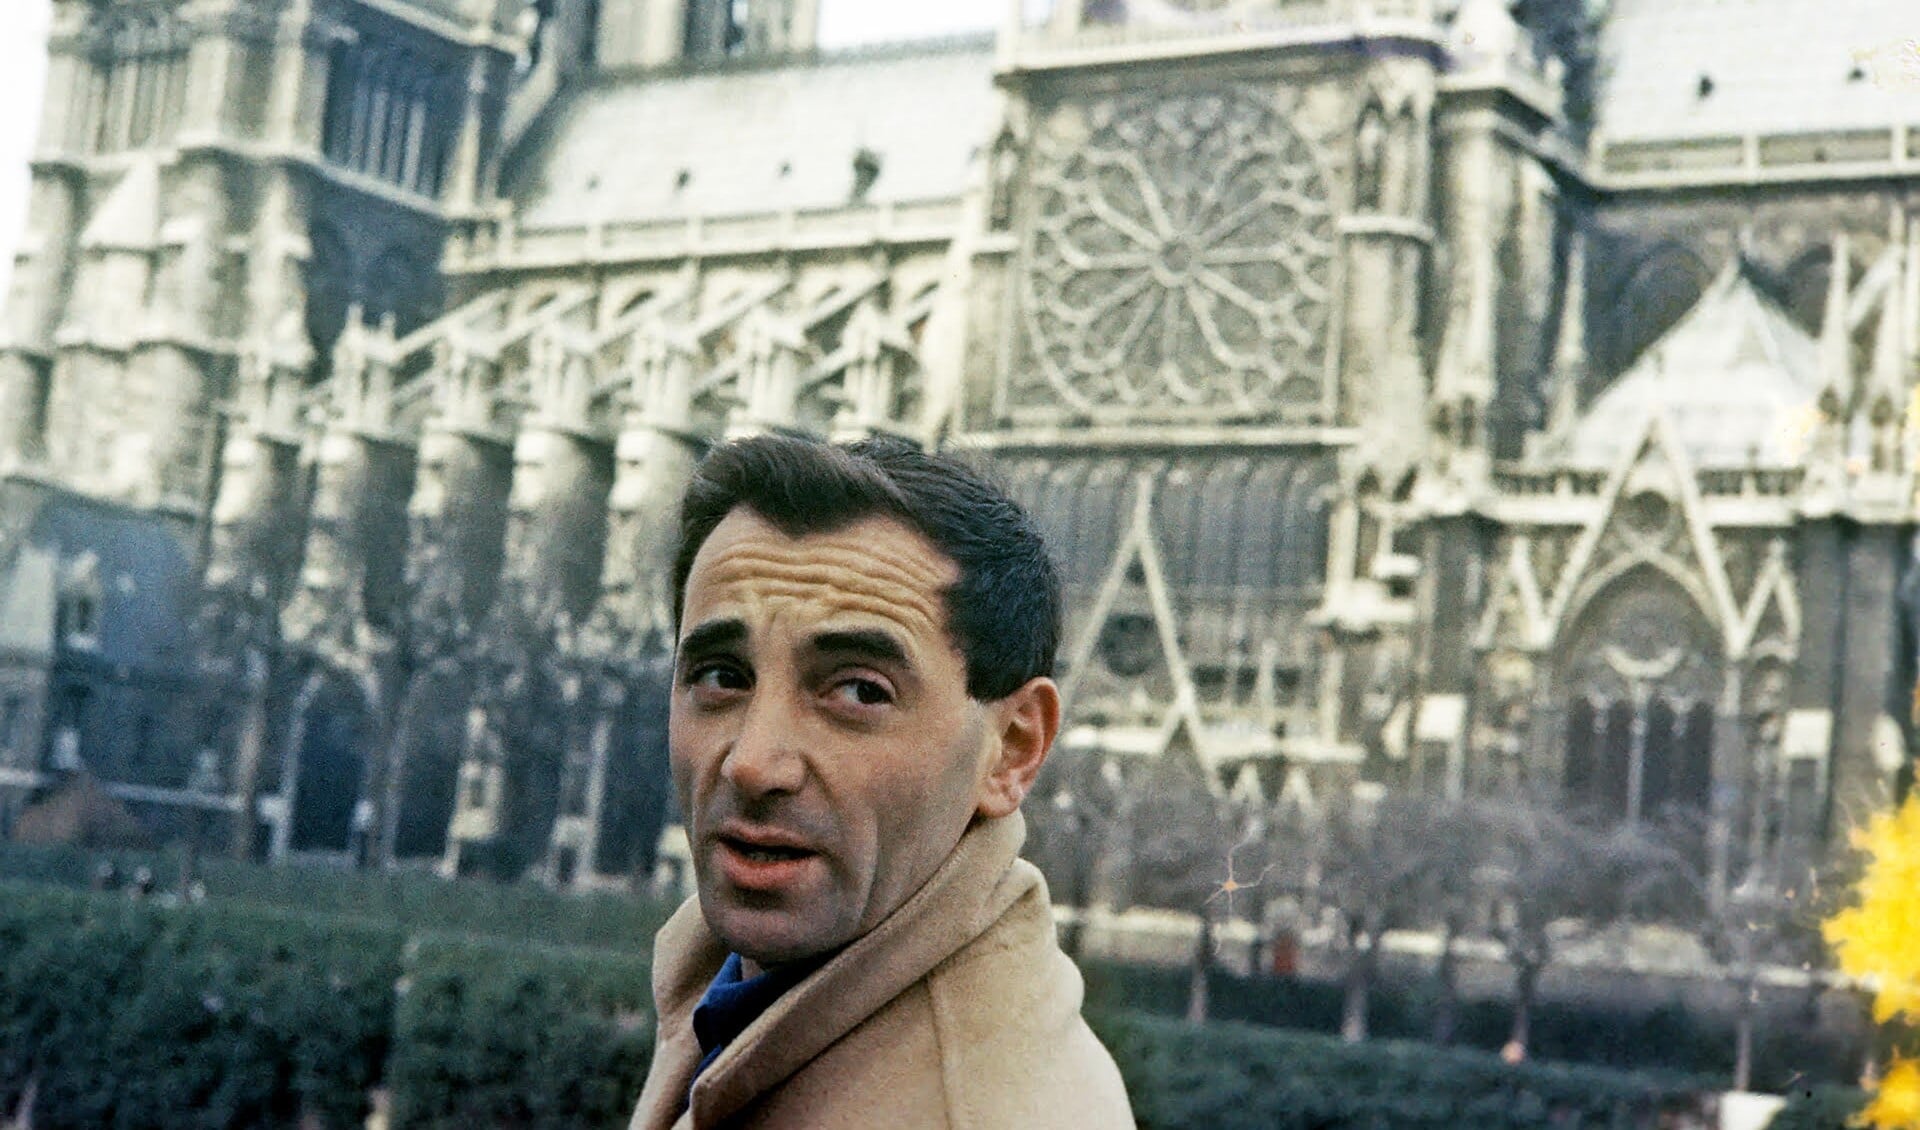 Scène uit 'Aznavour, le regard de Charles', een heerlijke combinatie tussen de muziek van Aznavour en zijn blik op de wereld.